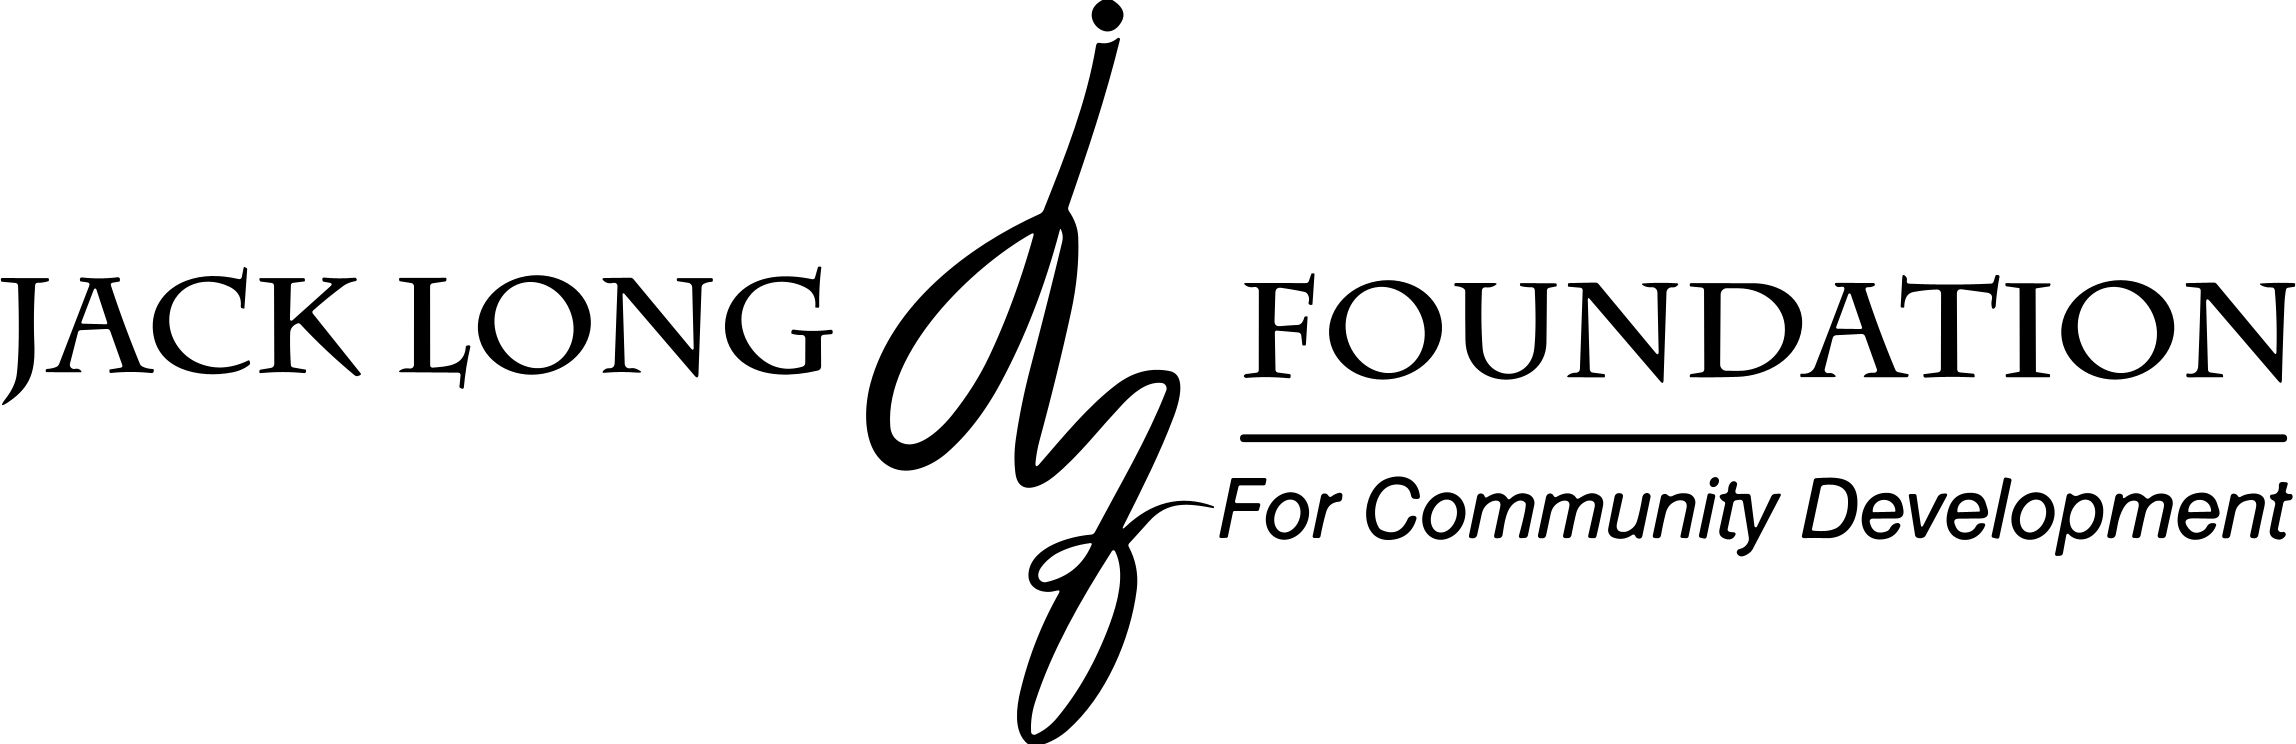 Logo for Jack Long Foundation on a transparent background